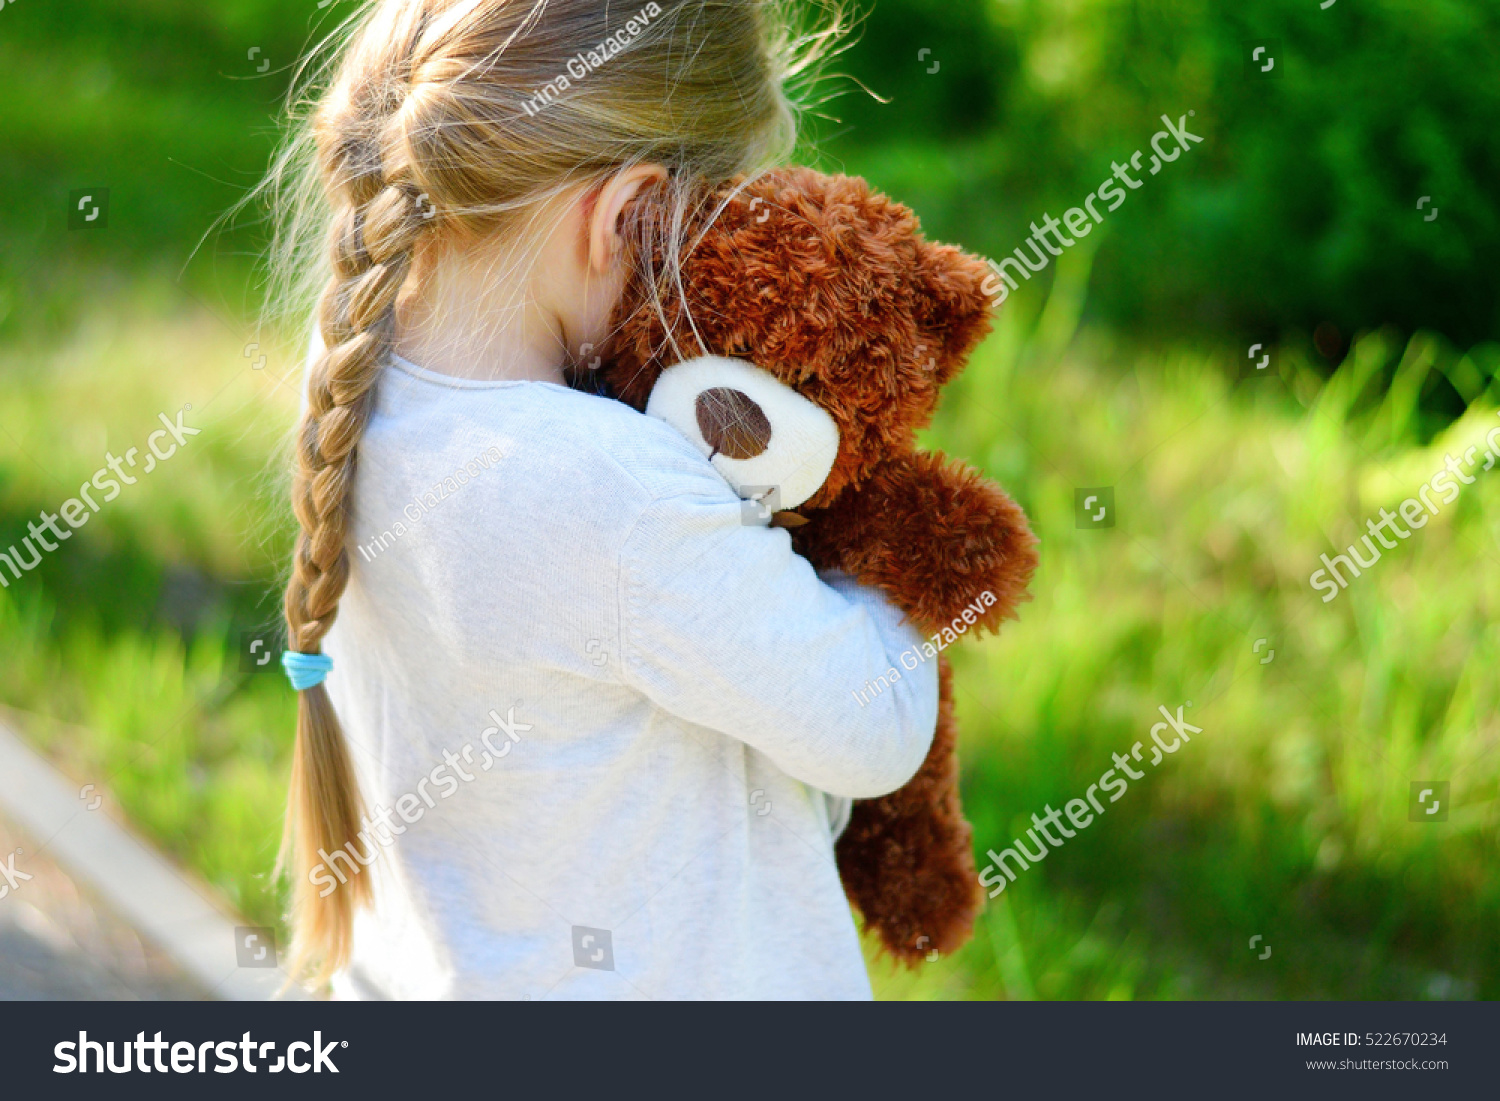 sad teddy bear with girl